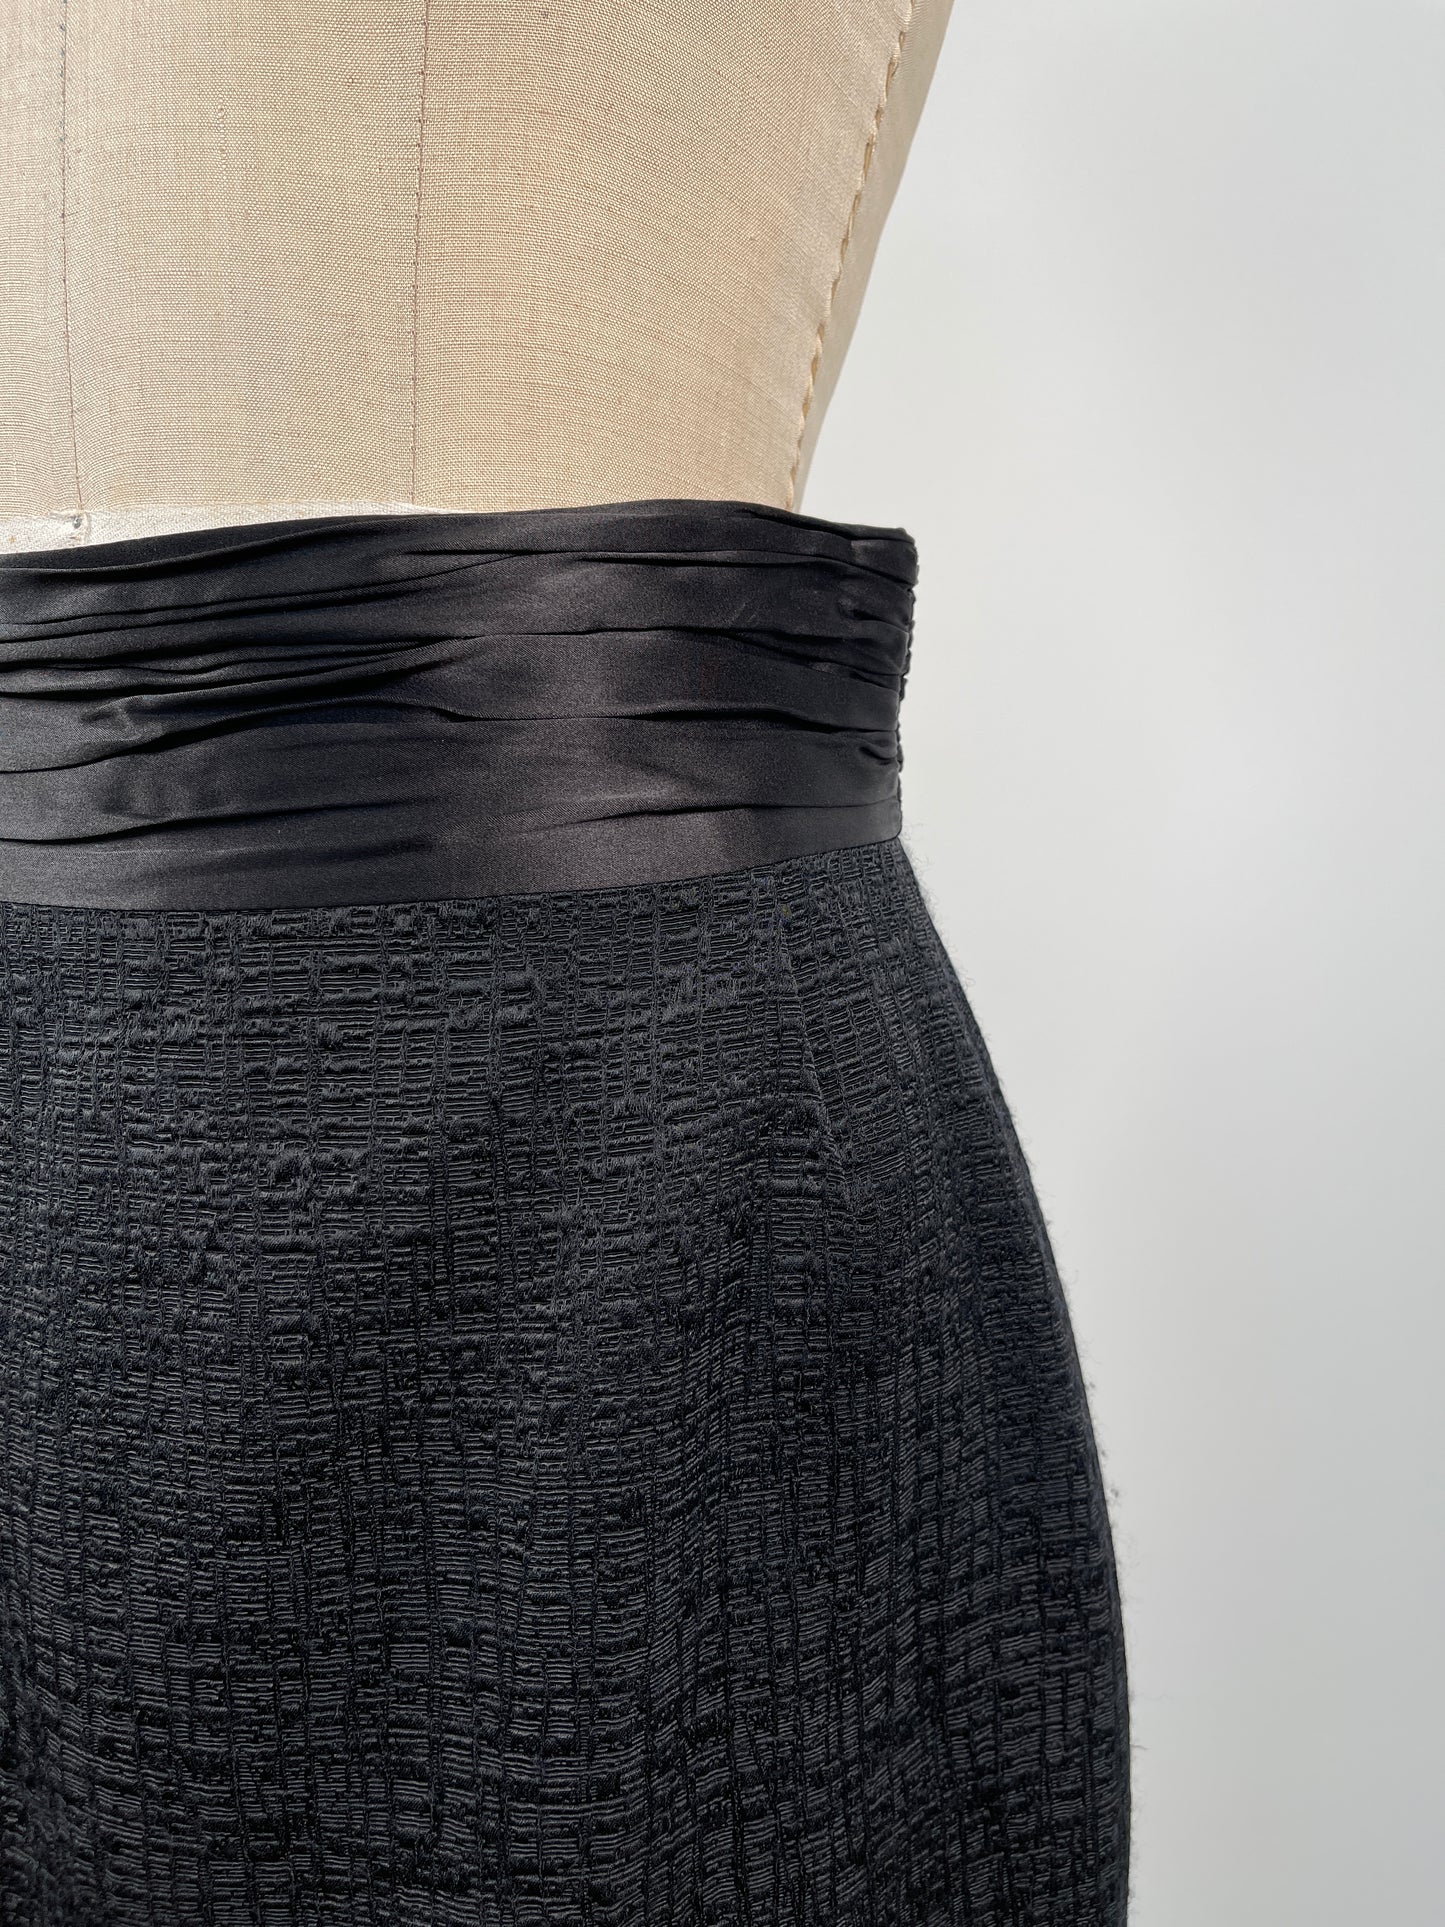 Jupe noire texturée à taille de satin plissé (M)